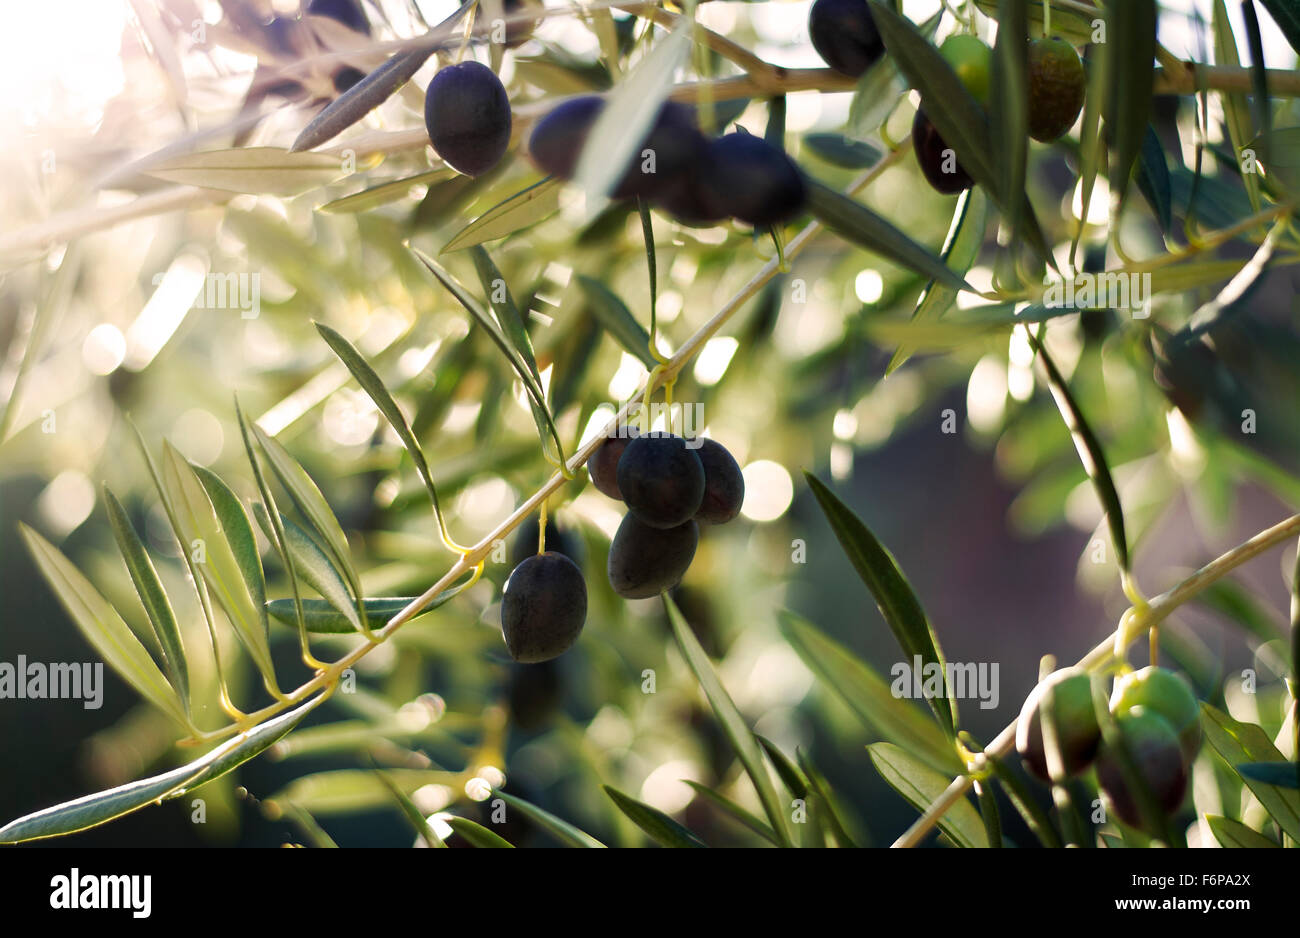 Nahaufnahme eines stimmungsvollen Bildes von schwarzen Oliven hängen von einem Baum mit späten Sonne Flare. Stockfoto